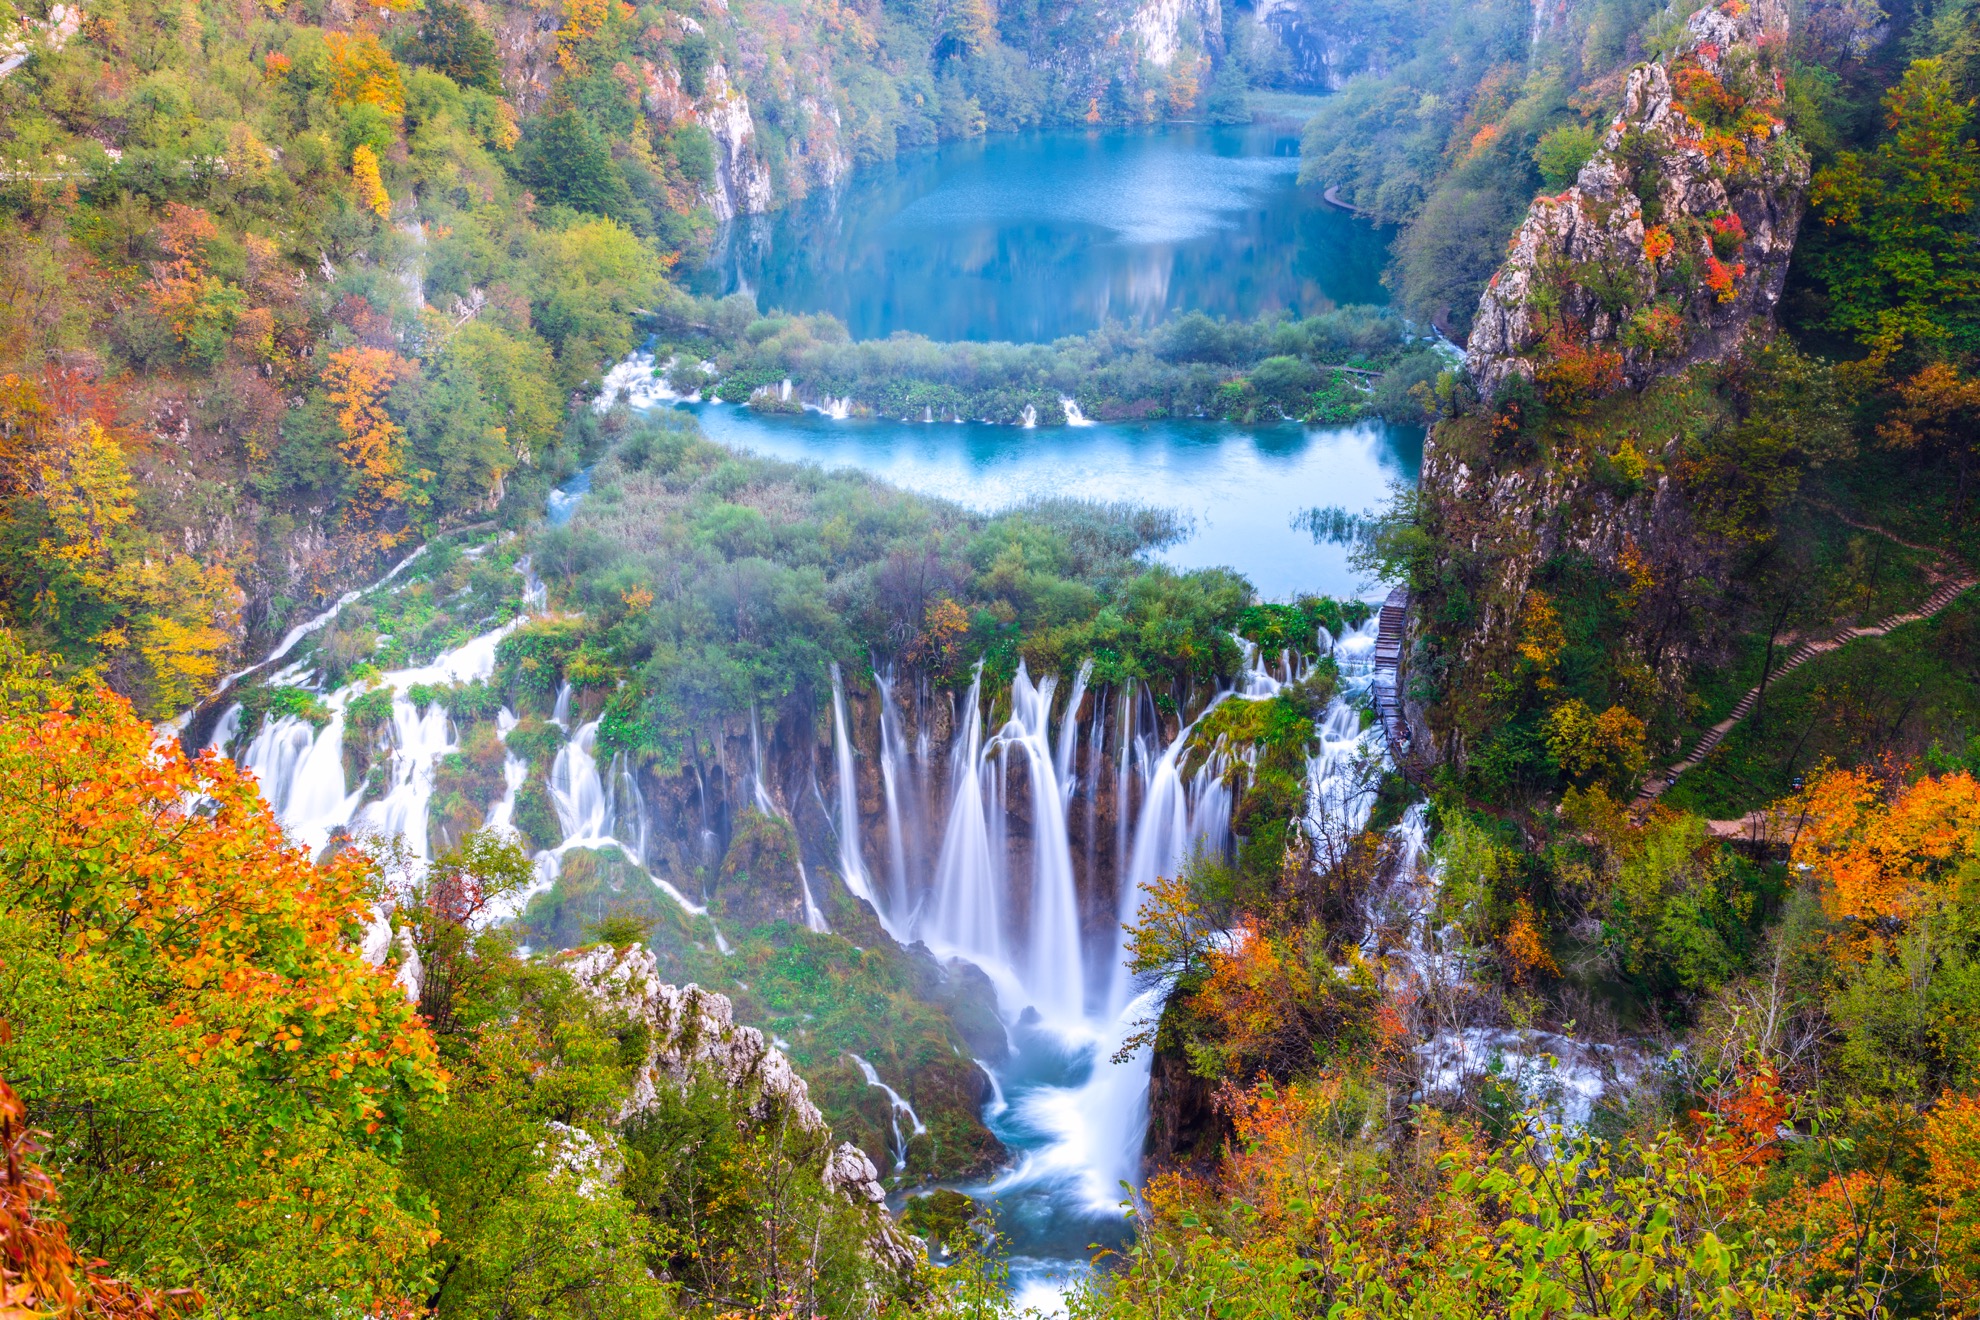 Cascadas se unen a 16 lagos naturales en el impresionante Parque Nacional Plitvice Lakes de Croacia - 27